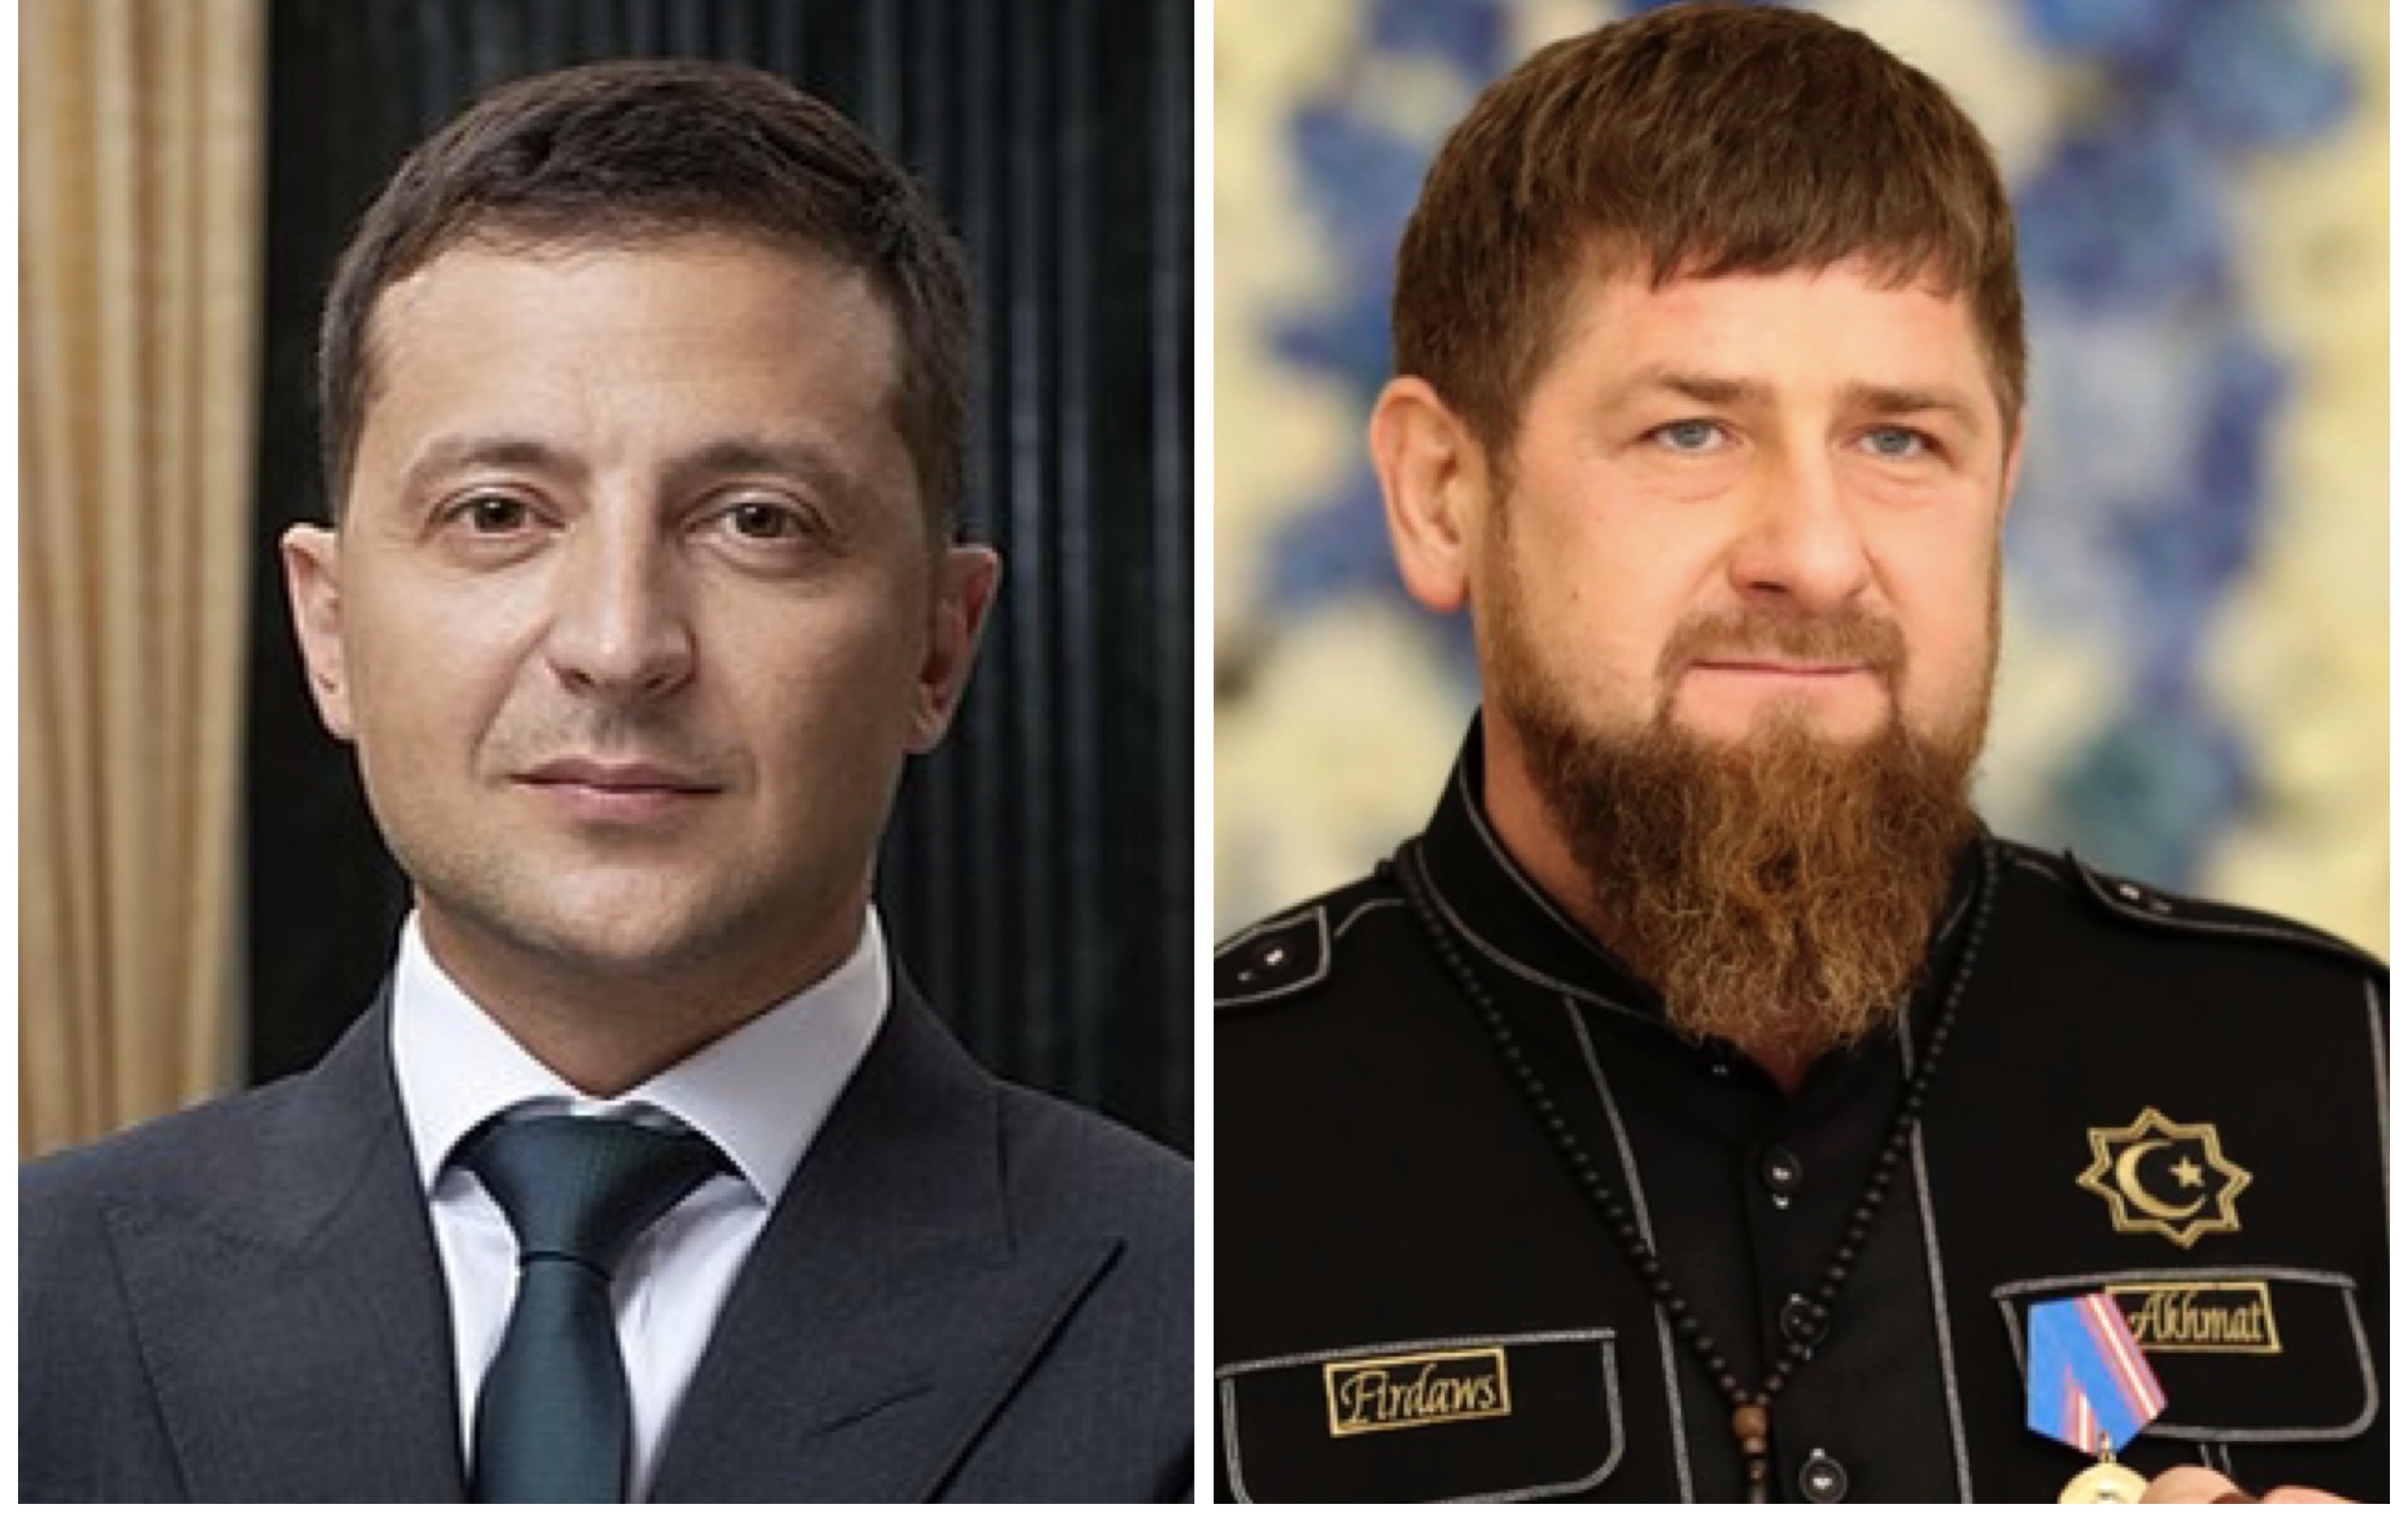 “Придется ответить”. Кадыров потребовал от Зеленского подтвердить свои извинения за ролик “Квартала 95”